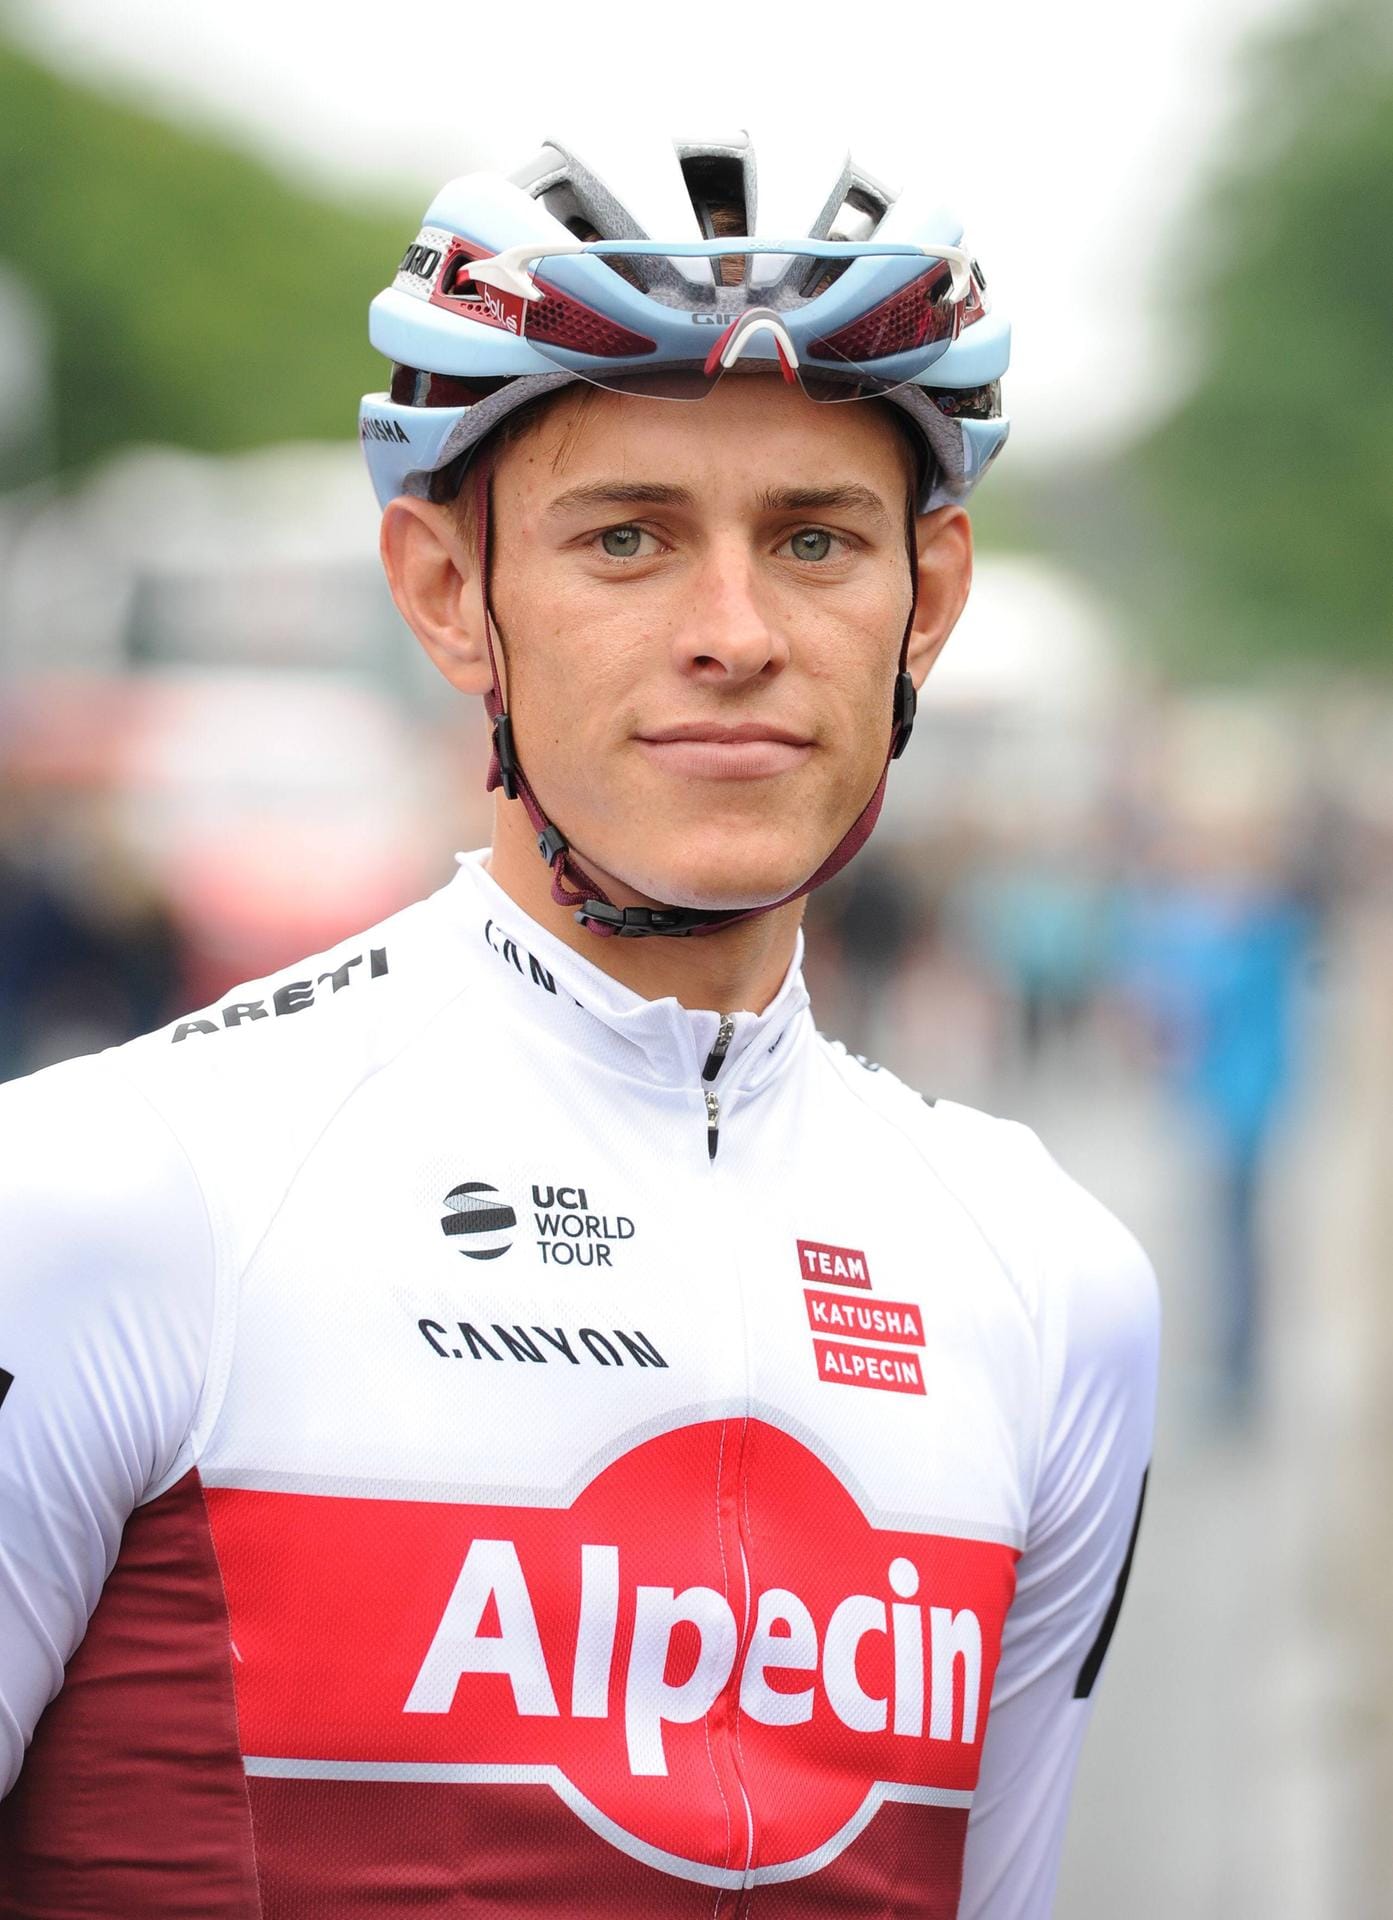 Nils Politt (24 Jahre, Katusha-Alpecin): Er hat besonders auf Klassiker-Terrain schon bewiesen, dass er internationale Klasse verkörpert. Er beendete Paris-Roubaix und die Klassiker Flandern-Rundfahrt als bester Deutscher. Politt steht wie Rick Zabel vor seiner zweiten Tour-de-France-Teilnahme.